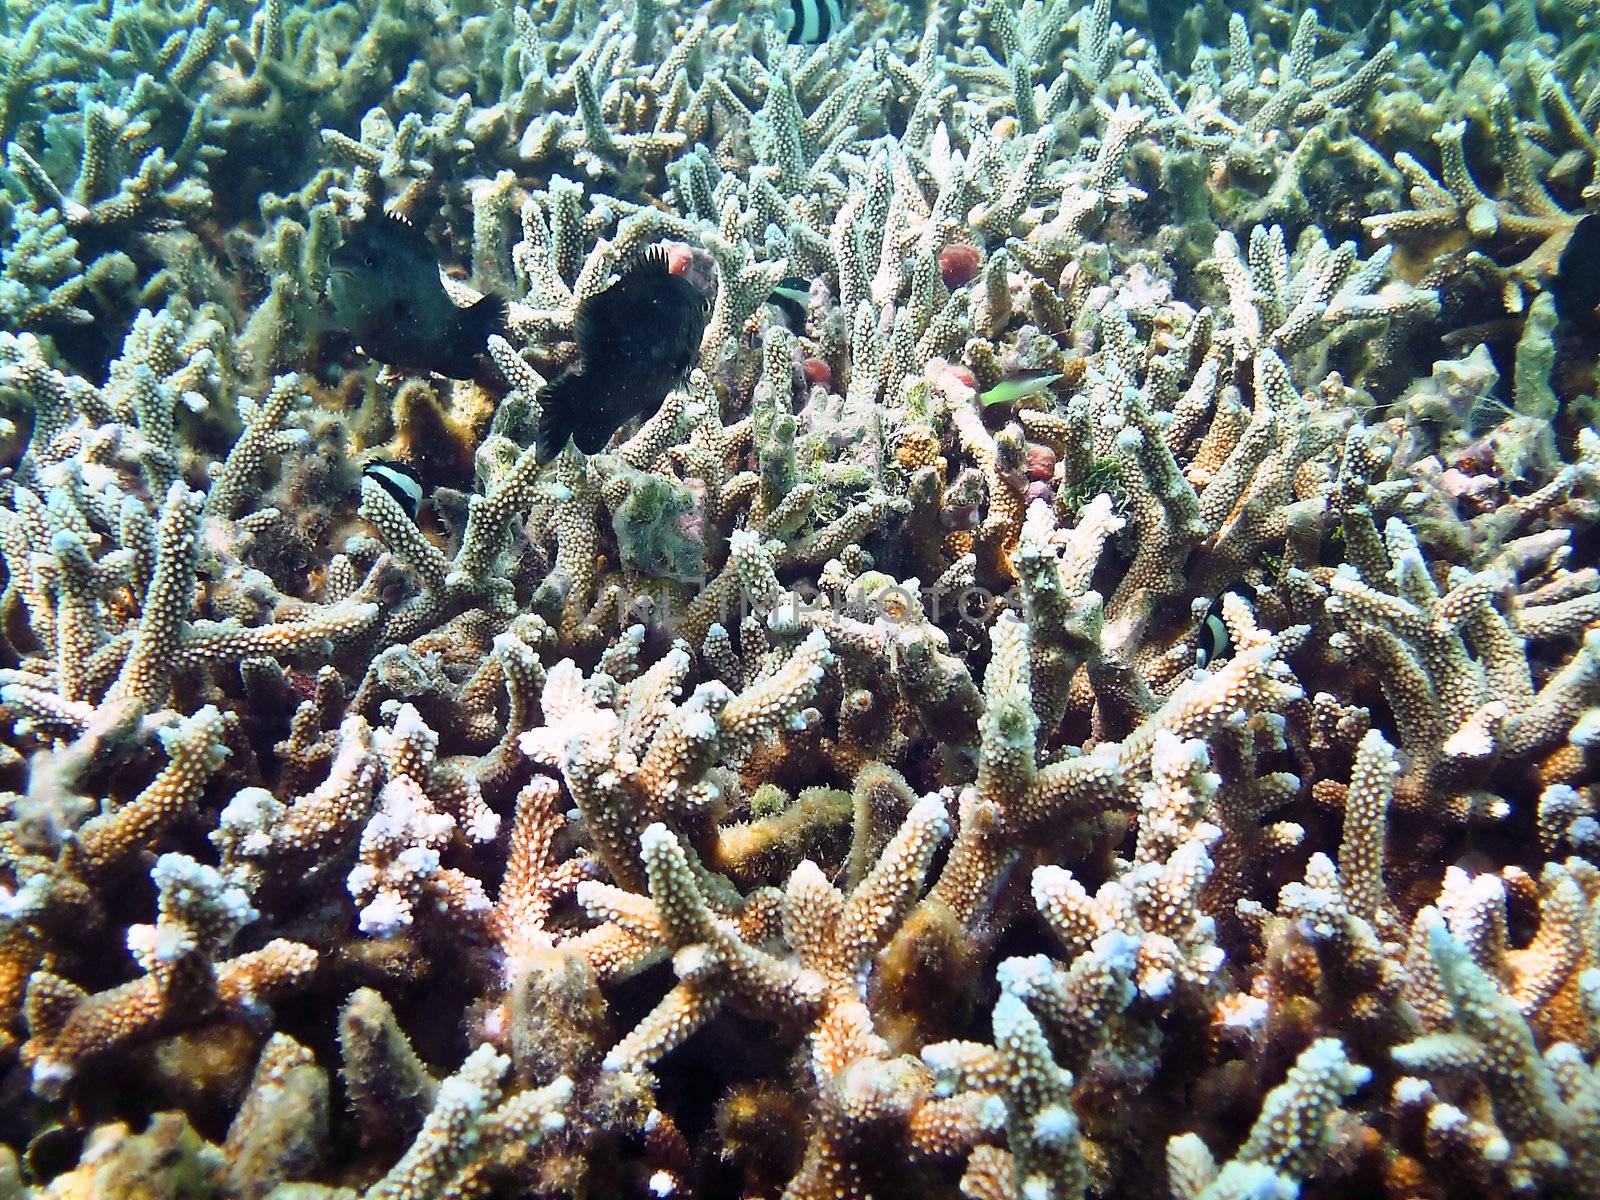 Tropical fish kingdom - coral reef in the maldivian sea